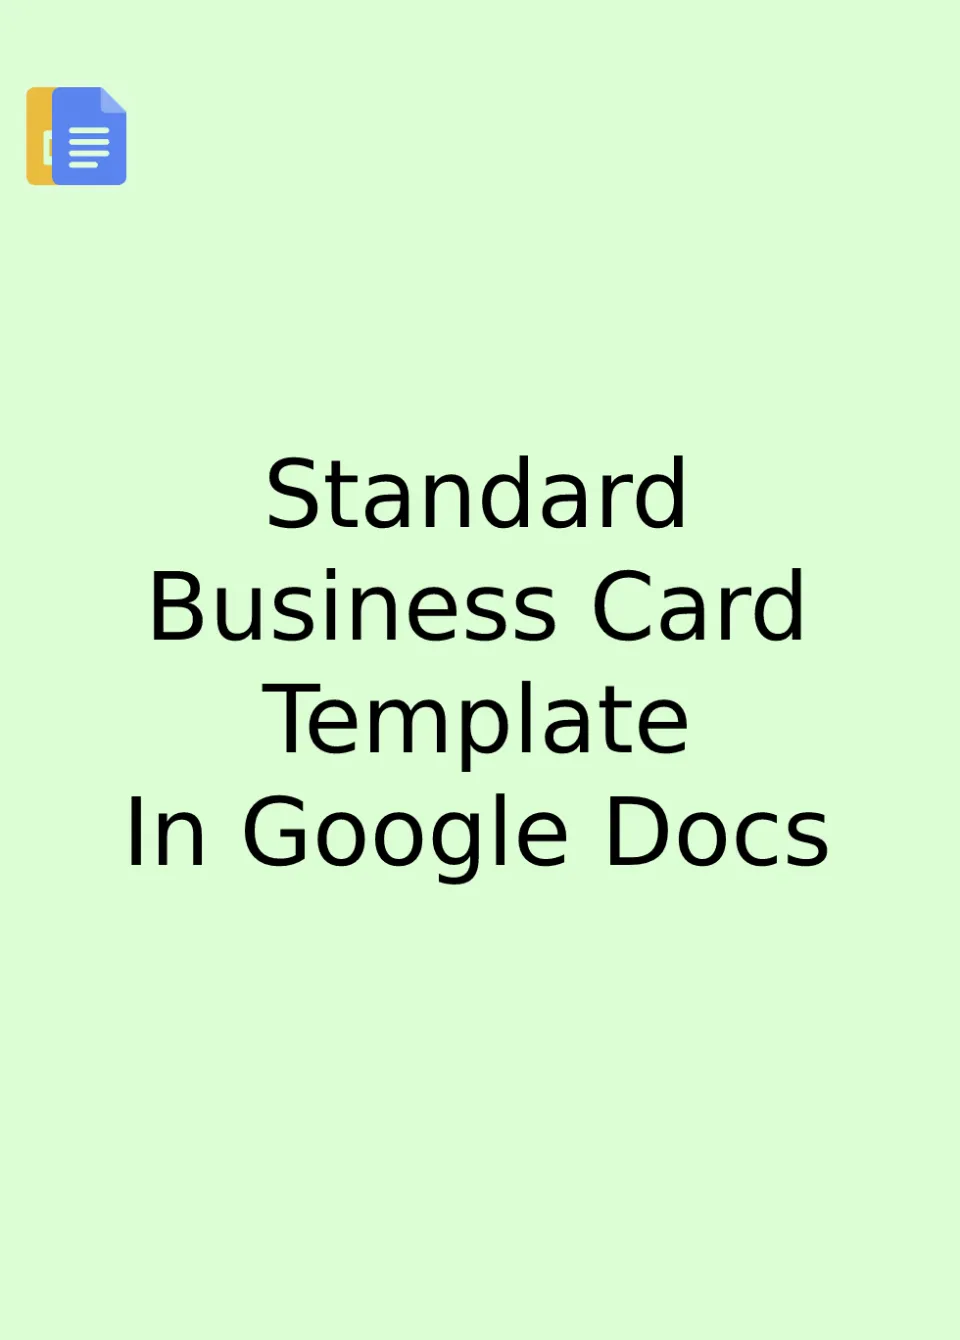 Standard Business Card Template Google Docs